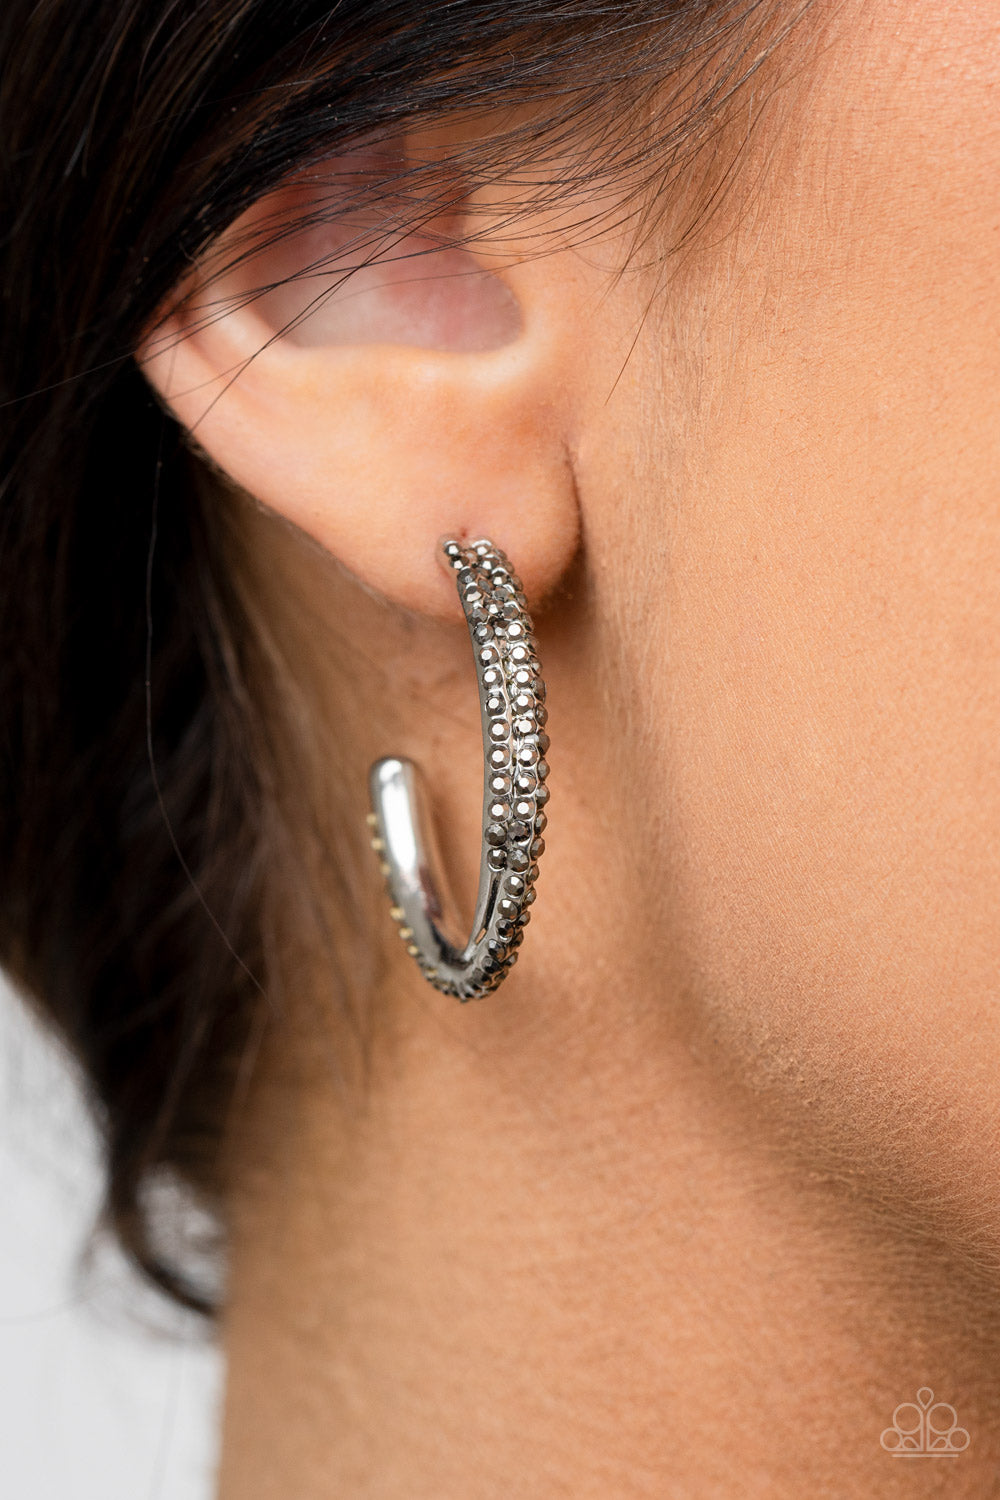 Trail of Twinkle - silver - Paparazzi earrings